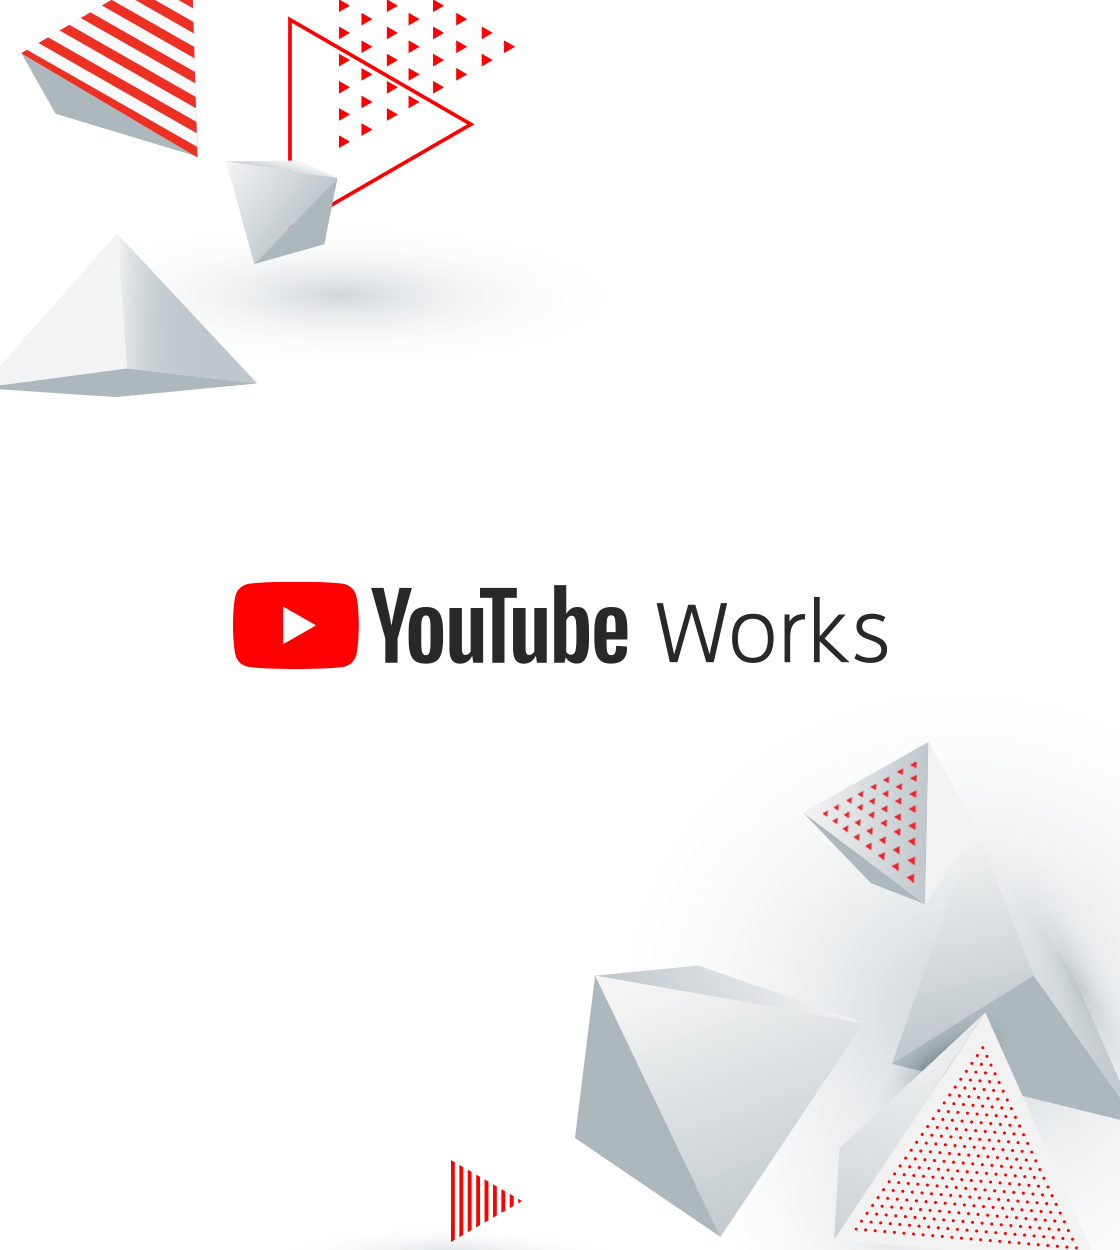 [Google 広告] YouTube Works Awards Japan 2022 ビジネスを成功に導いた作品のご応募に向けて